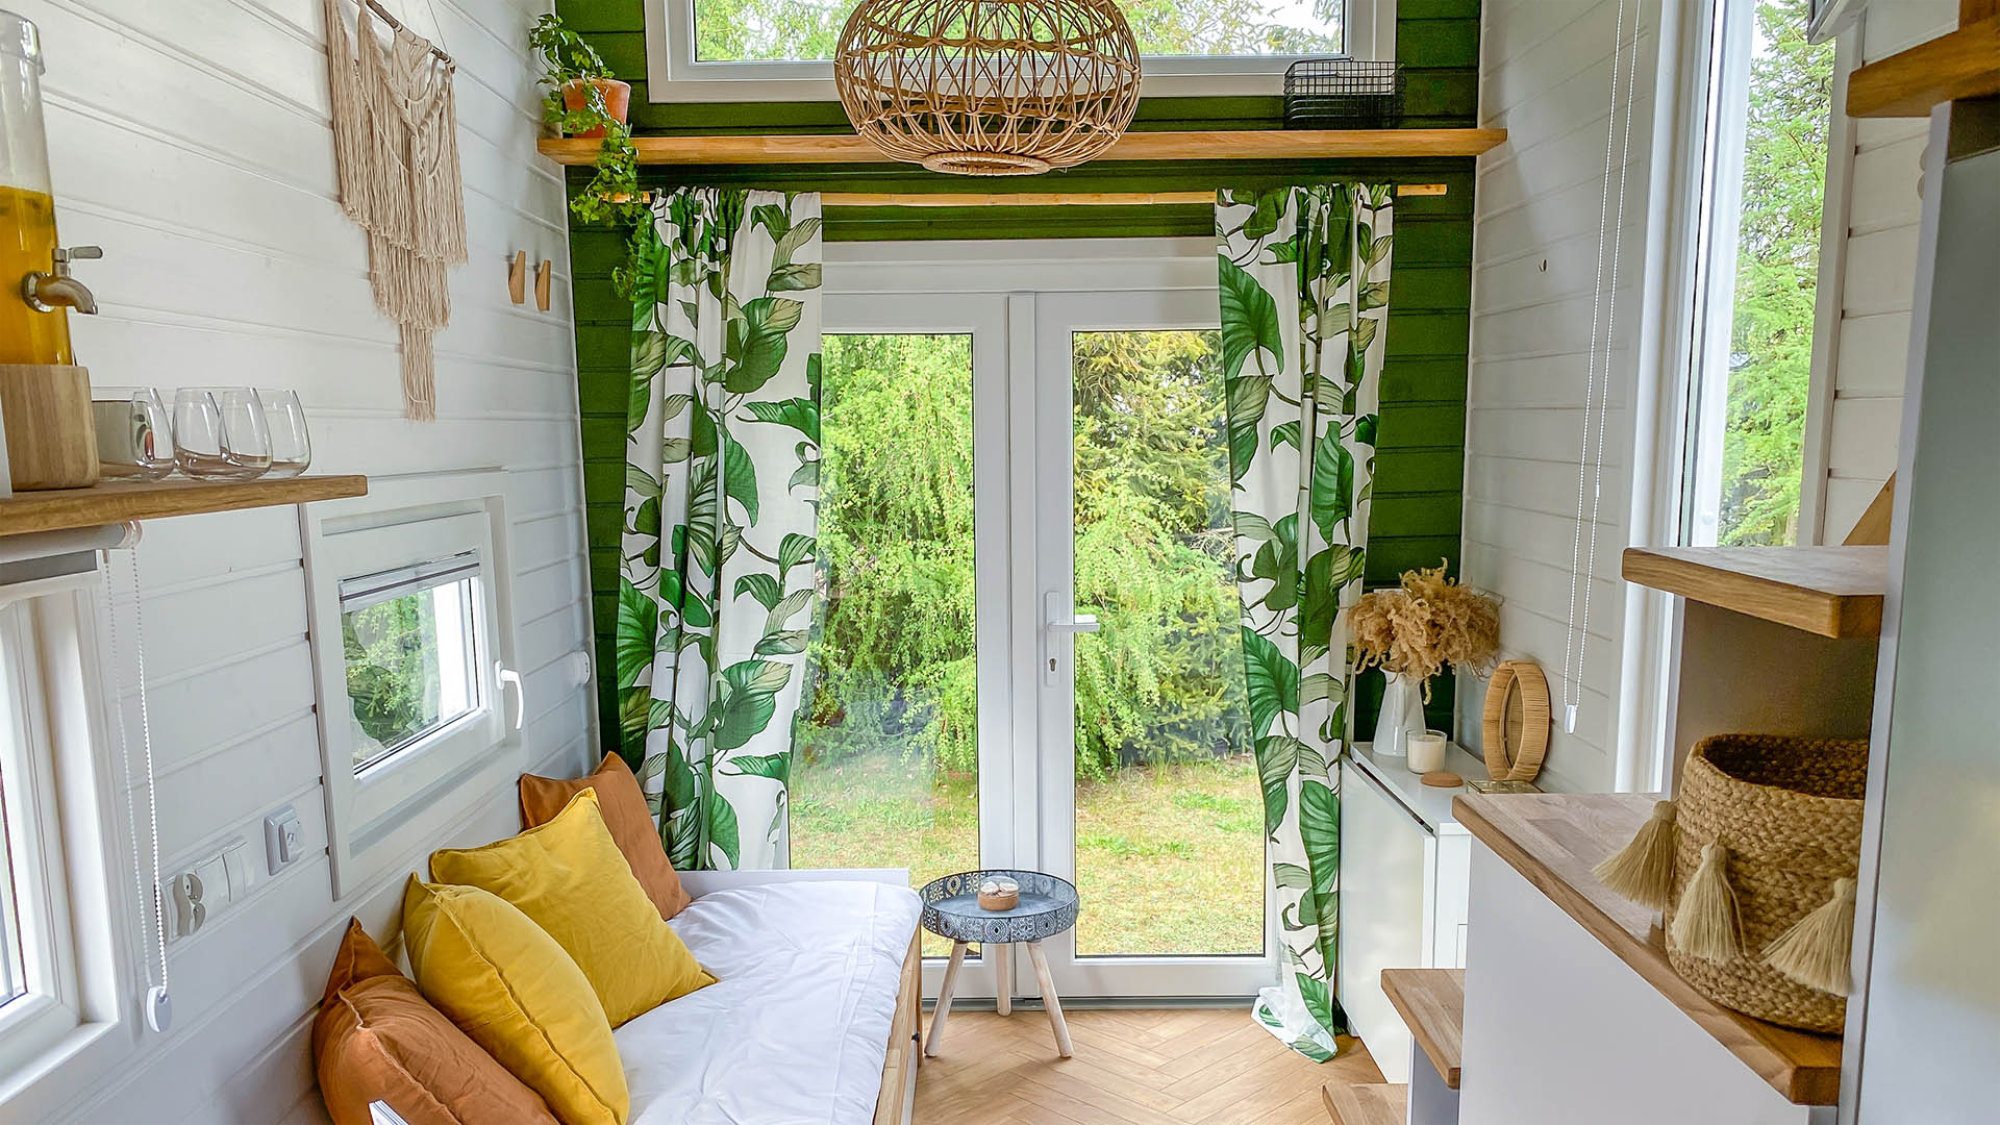 Tiny Haus - Innenansicht mit Blick durch ein Fenster in die Natur